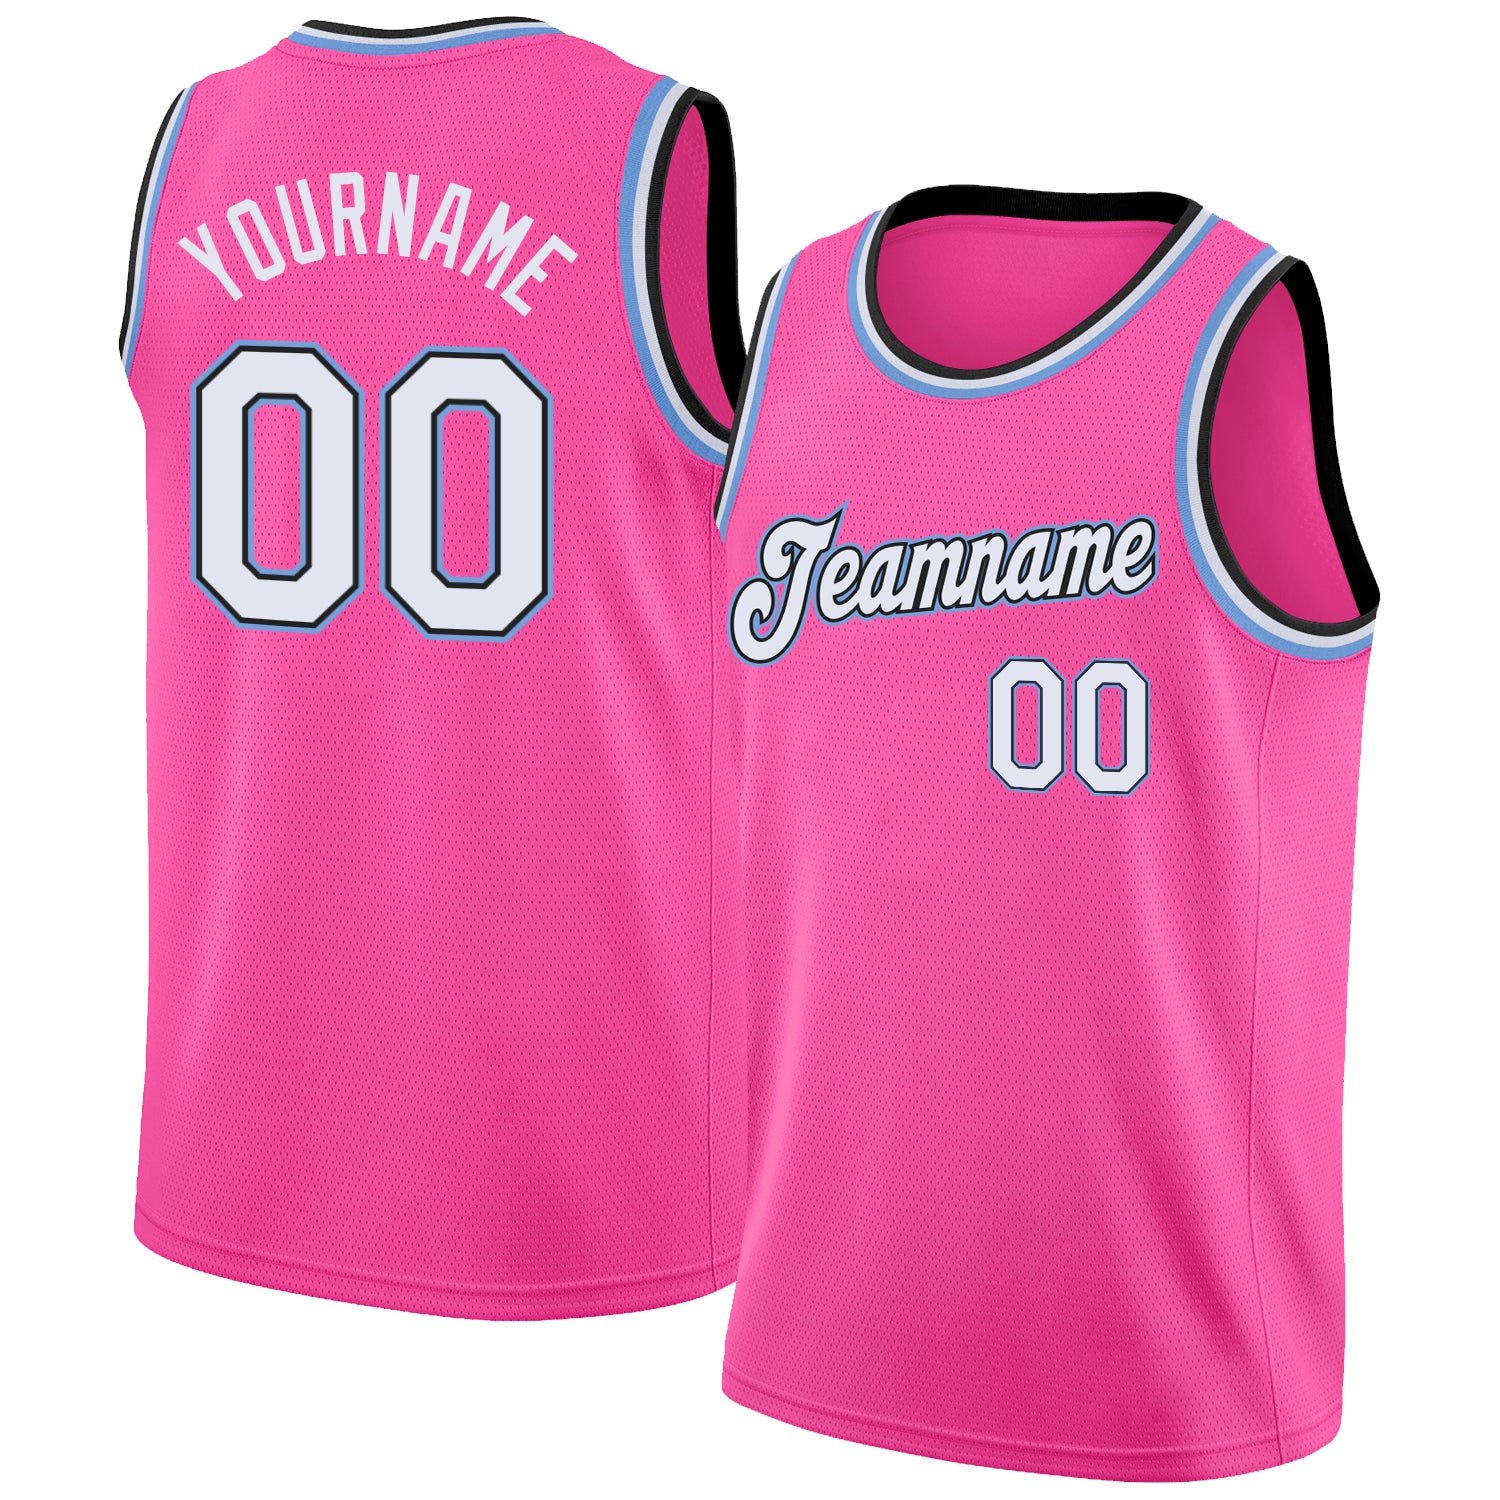 light pink jersey design